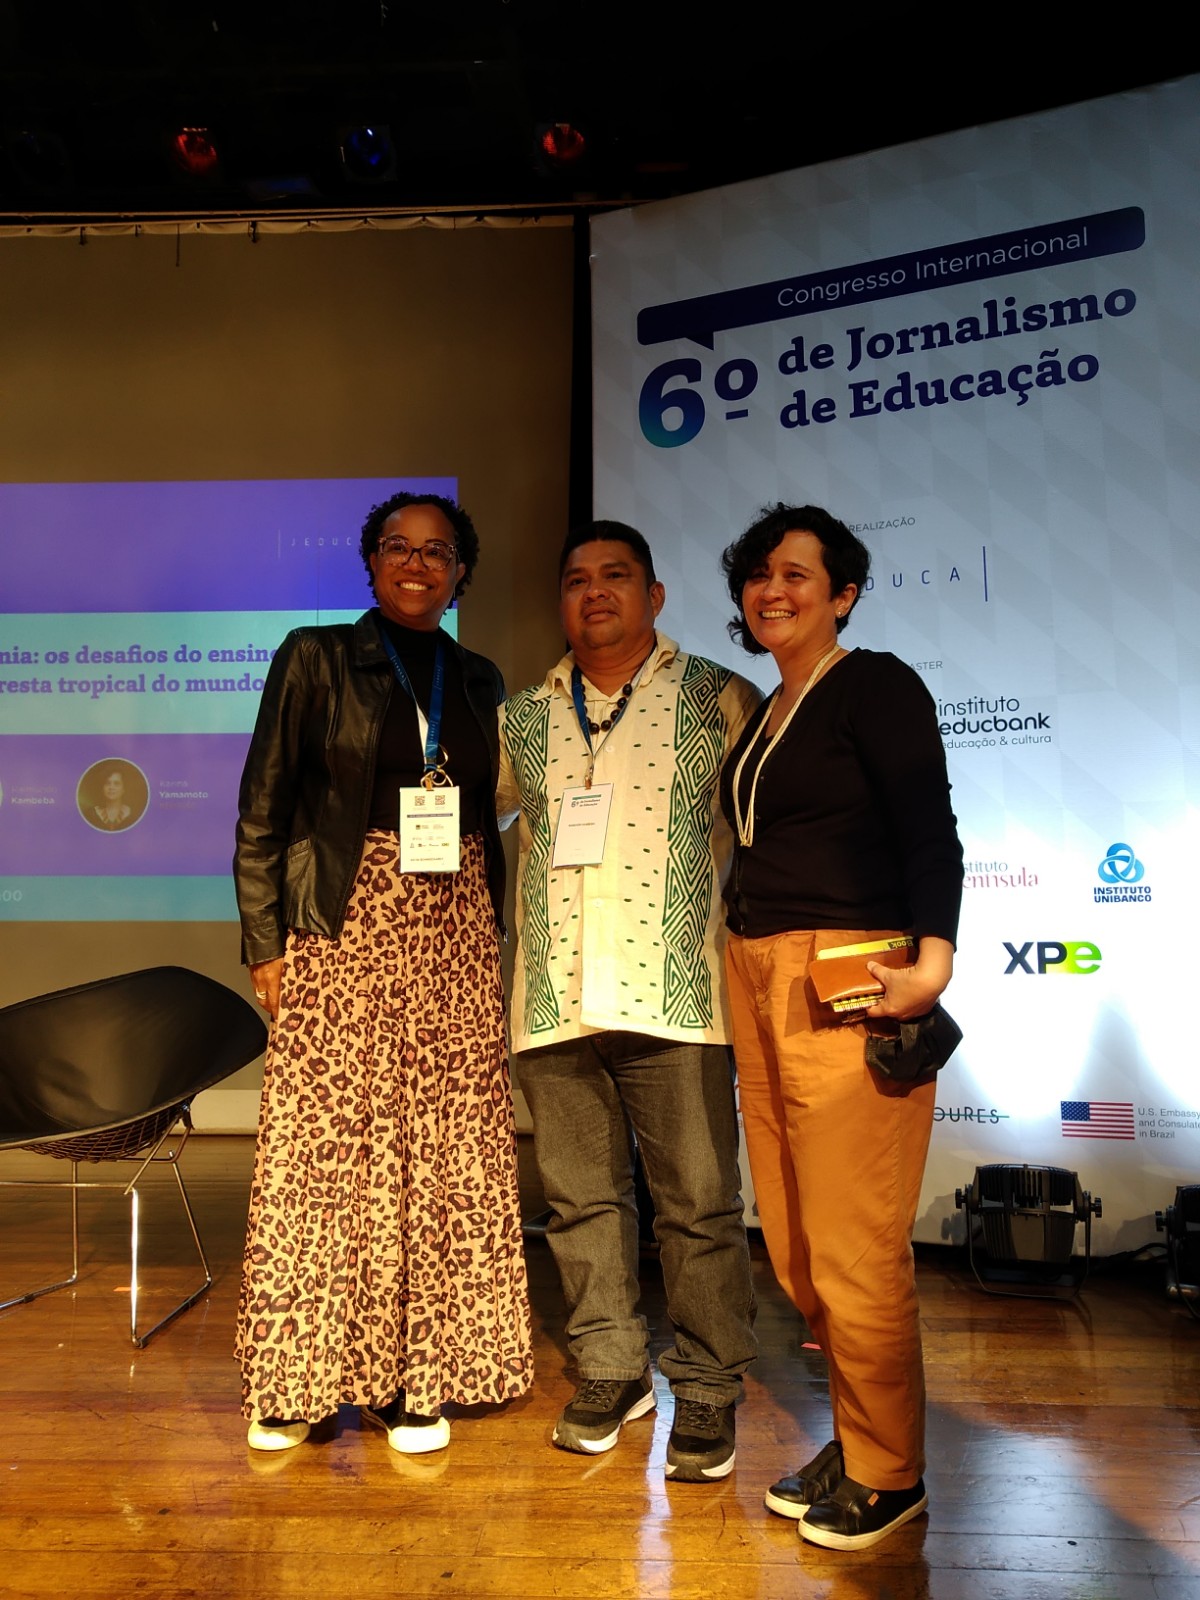 Kátia Schweickardt, Raimundo Kambeba e Karina Yamamoto, respectivamente, da esquerda para direita, no 6º Congresso Internacional de Jornalismo de Educação. Foto: Maria Ferreira dos Santos